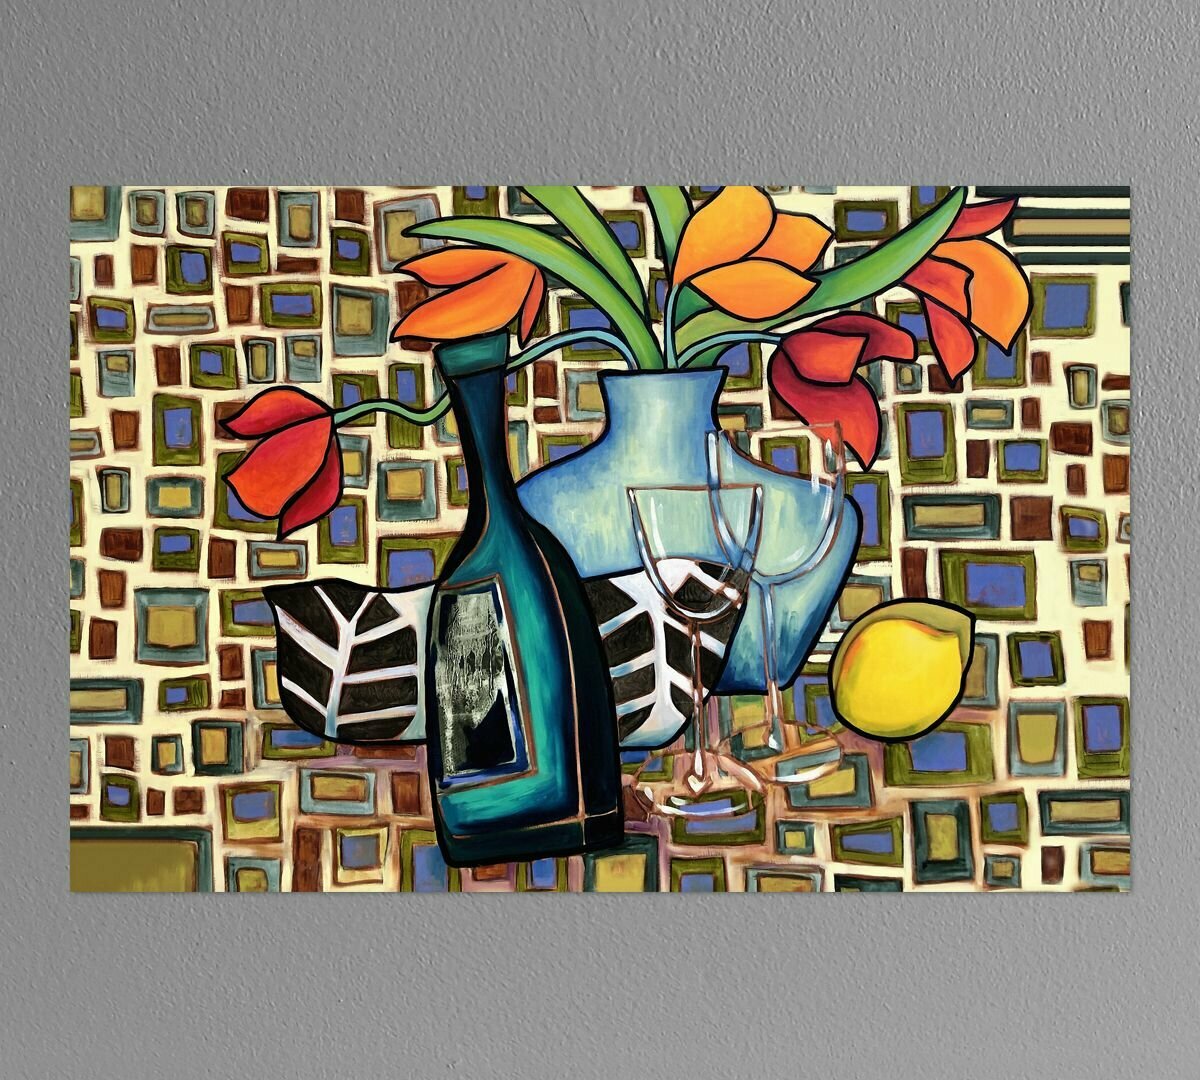 Картина для интерьера "Натюрморт с вином" Элиза Боунер 40х60 см натуральный холст. Коллекция - натюрморт, кубизм, пейзаж, мексиканская живопись.